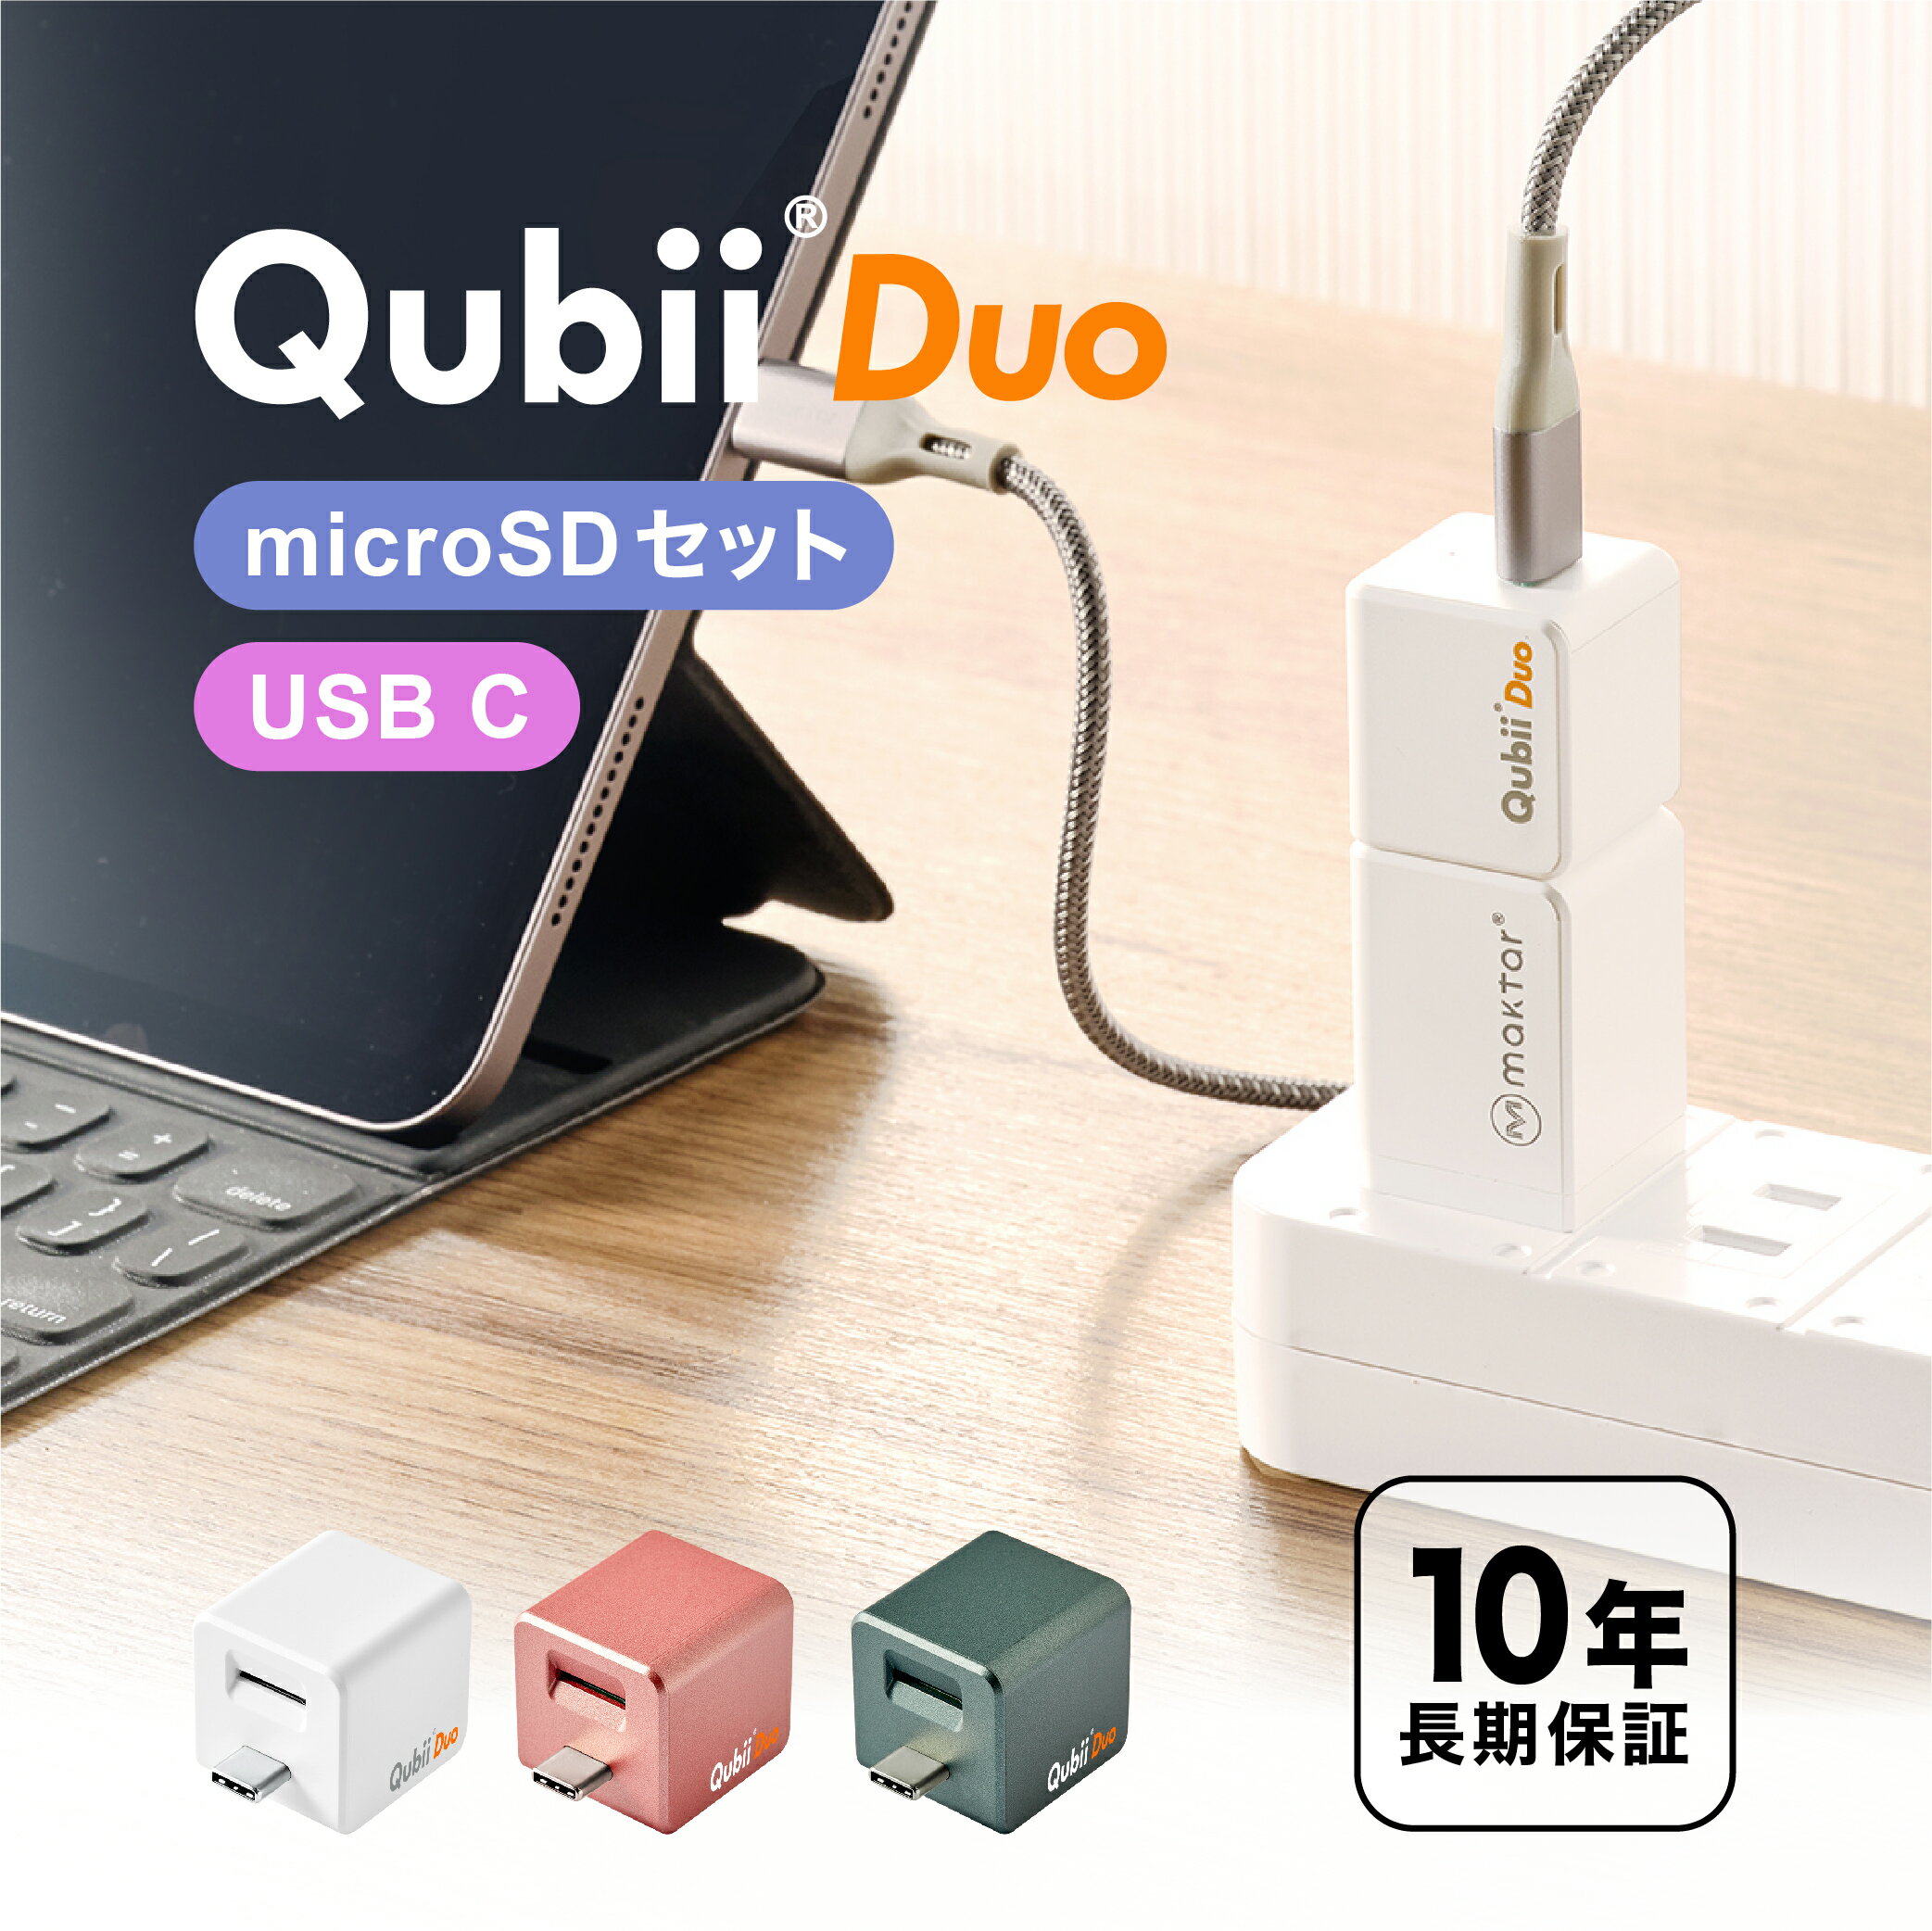  メーカー10年保証 Qubii Duo USB-C タイプ 充電しながら自動バックアップ iphone バックアップ usbメモリ ipad android 容量不足解消 写真 動画 音楽 連絡先 SNS データ 移行 SDカードリーダー 機種変更 MFi認証 USB-Cタイプ マクター Maktar